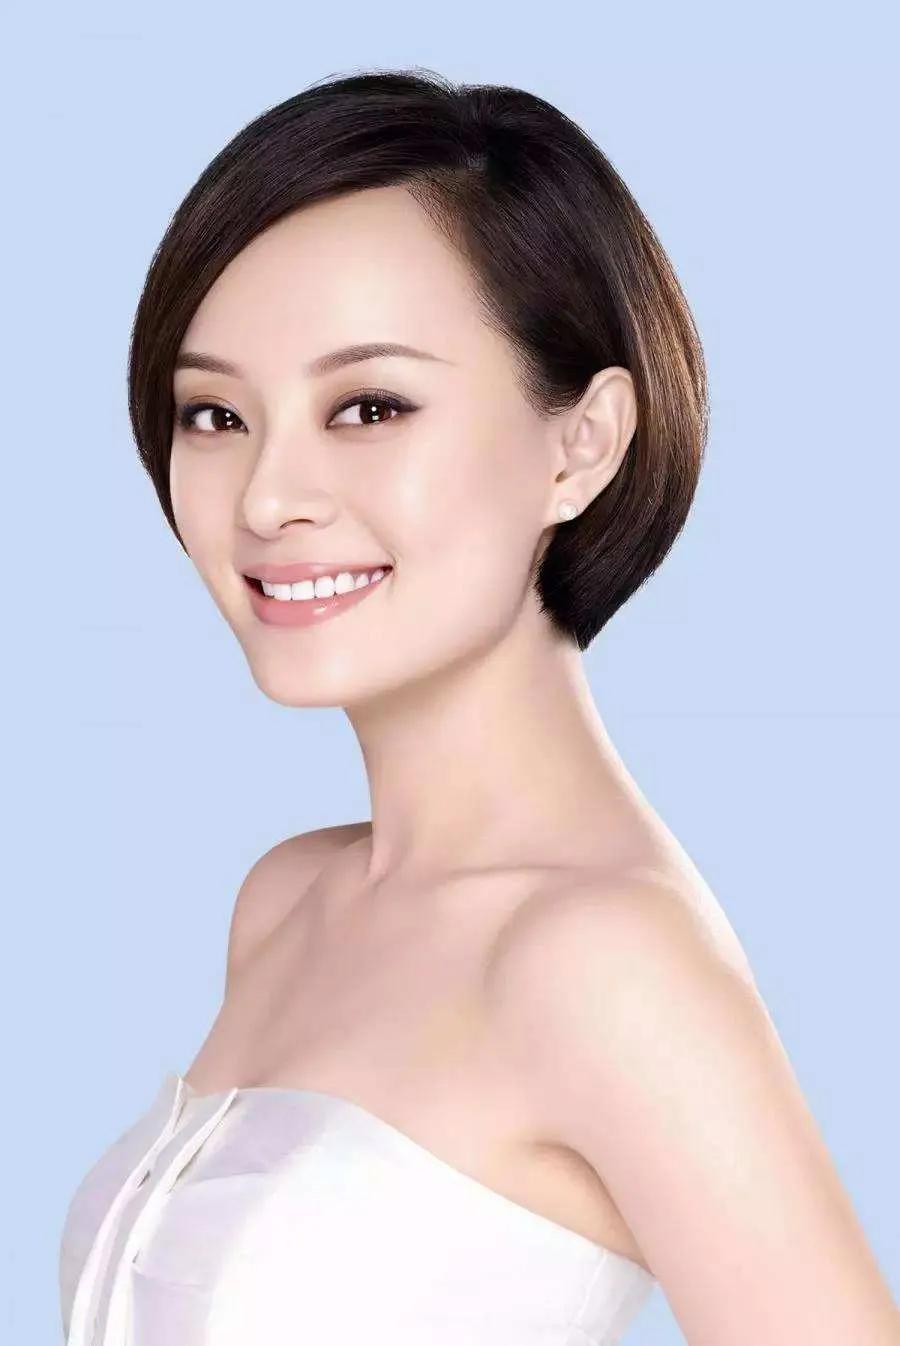 中国名人照片女性图片